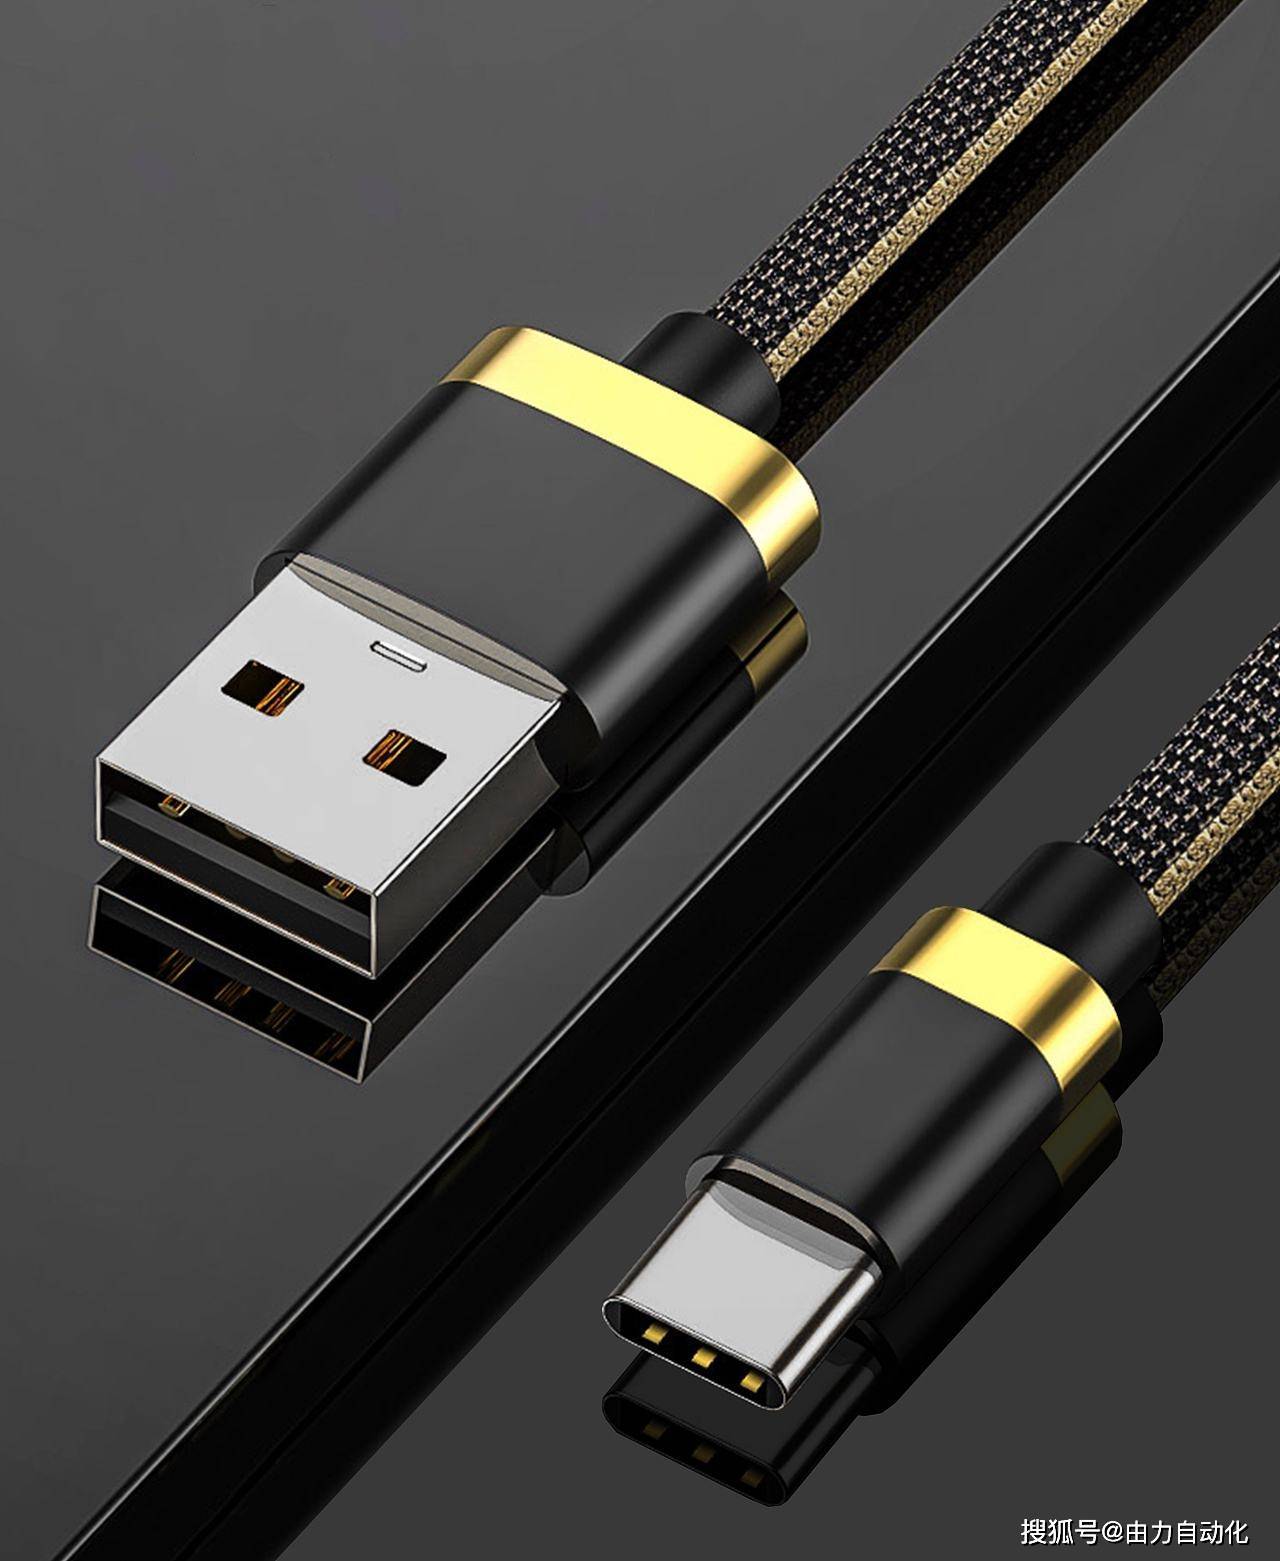 华为手机短信屏蔽解除
:生产USB数据线的焊接为何选择激光焊锡机